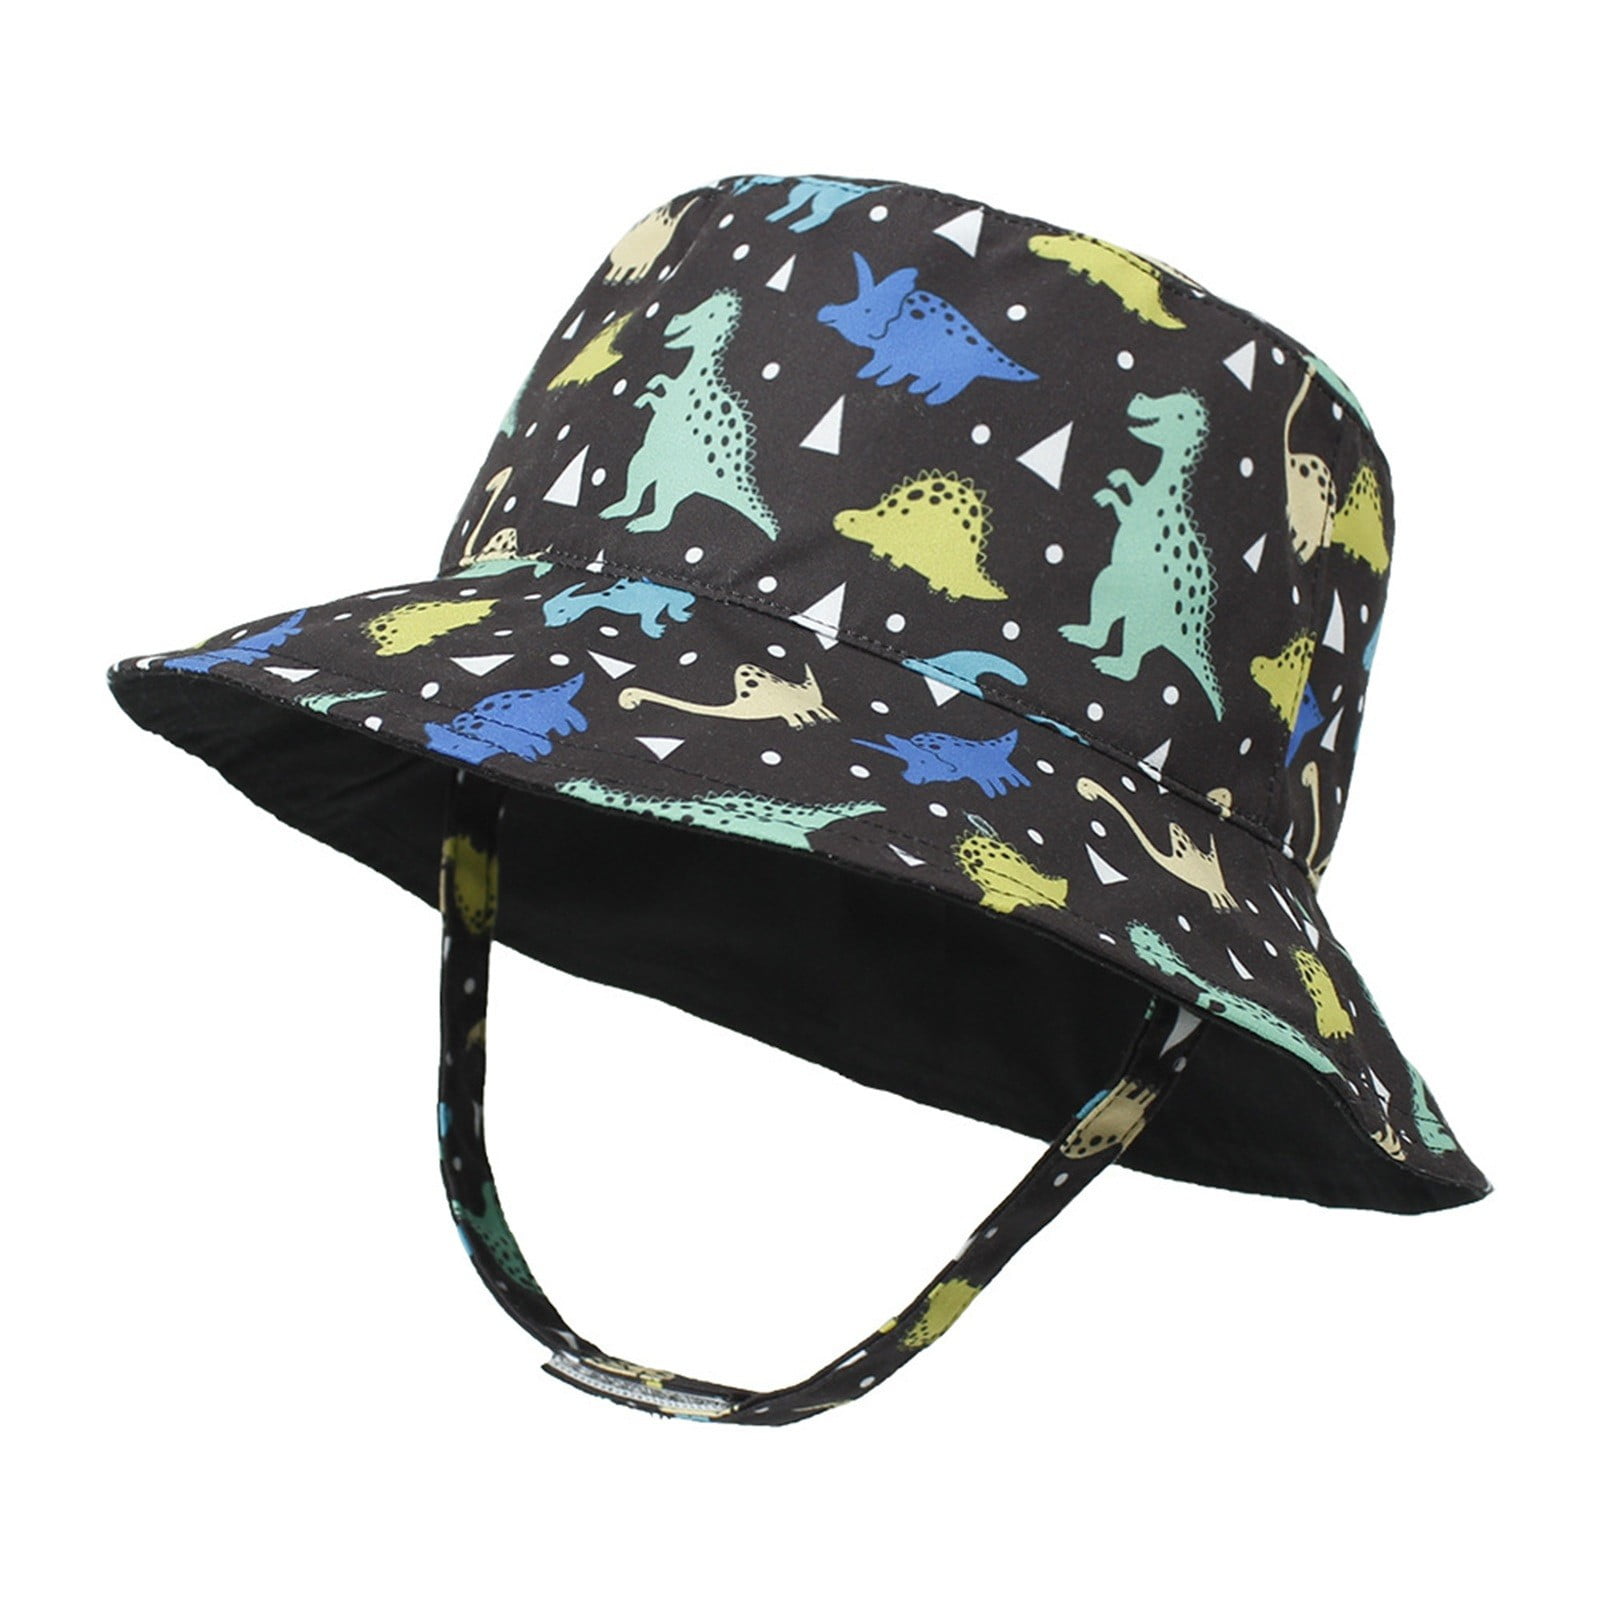 Kidscompany bucket hat for kids caps for kids boy cap for baby boy  Double-sided Wear